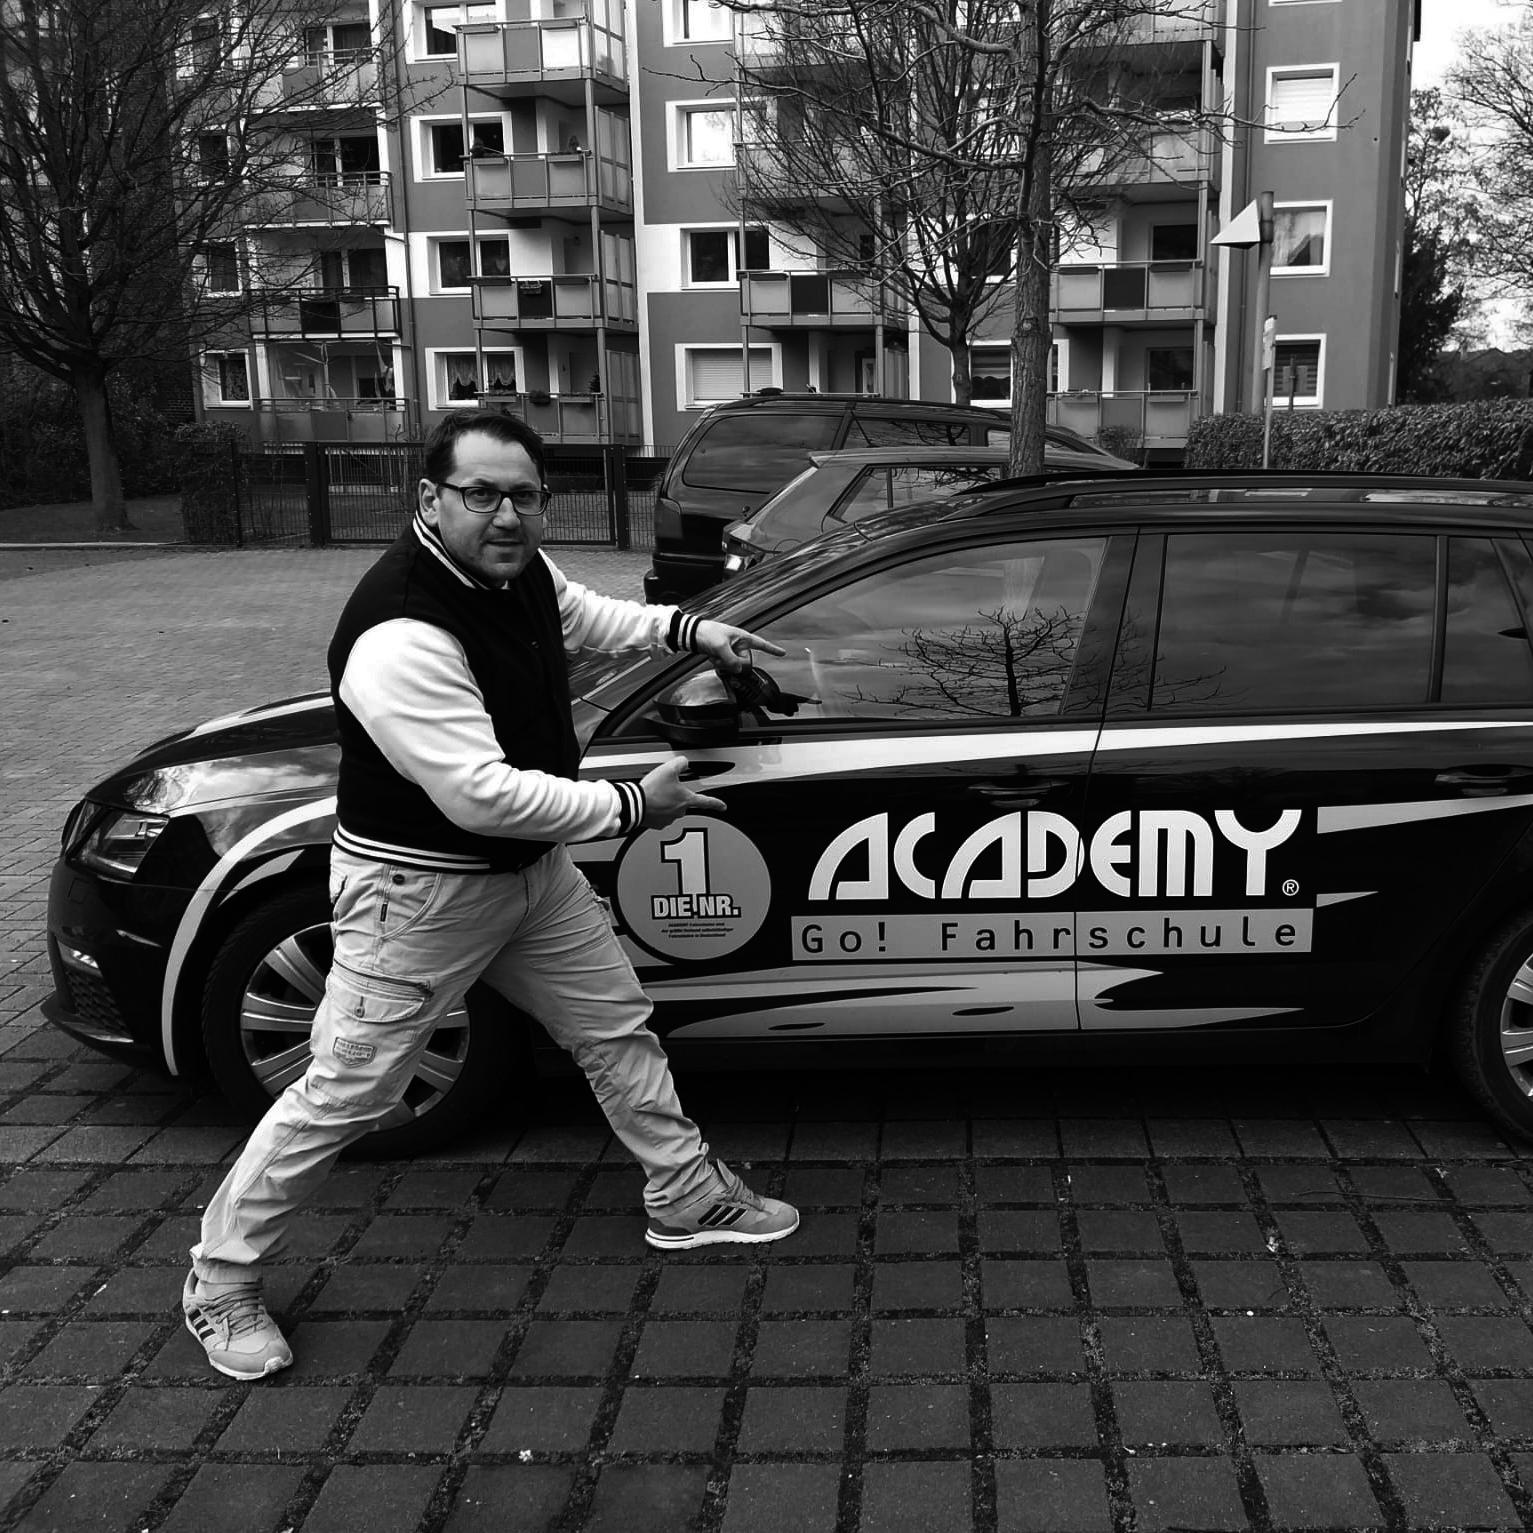 ACADEMY Fahrschule - de.academy.fahrschulen.model.instructor.Instructor@558f